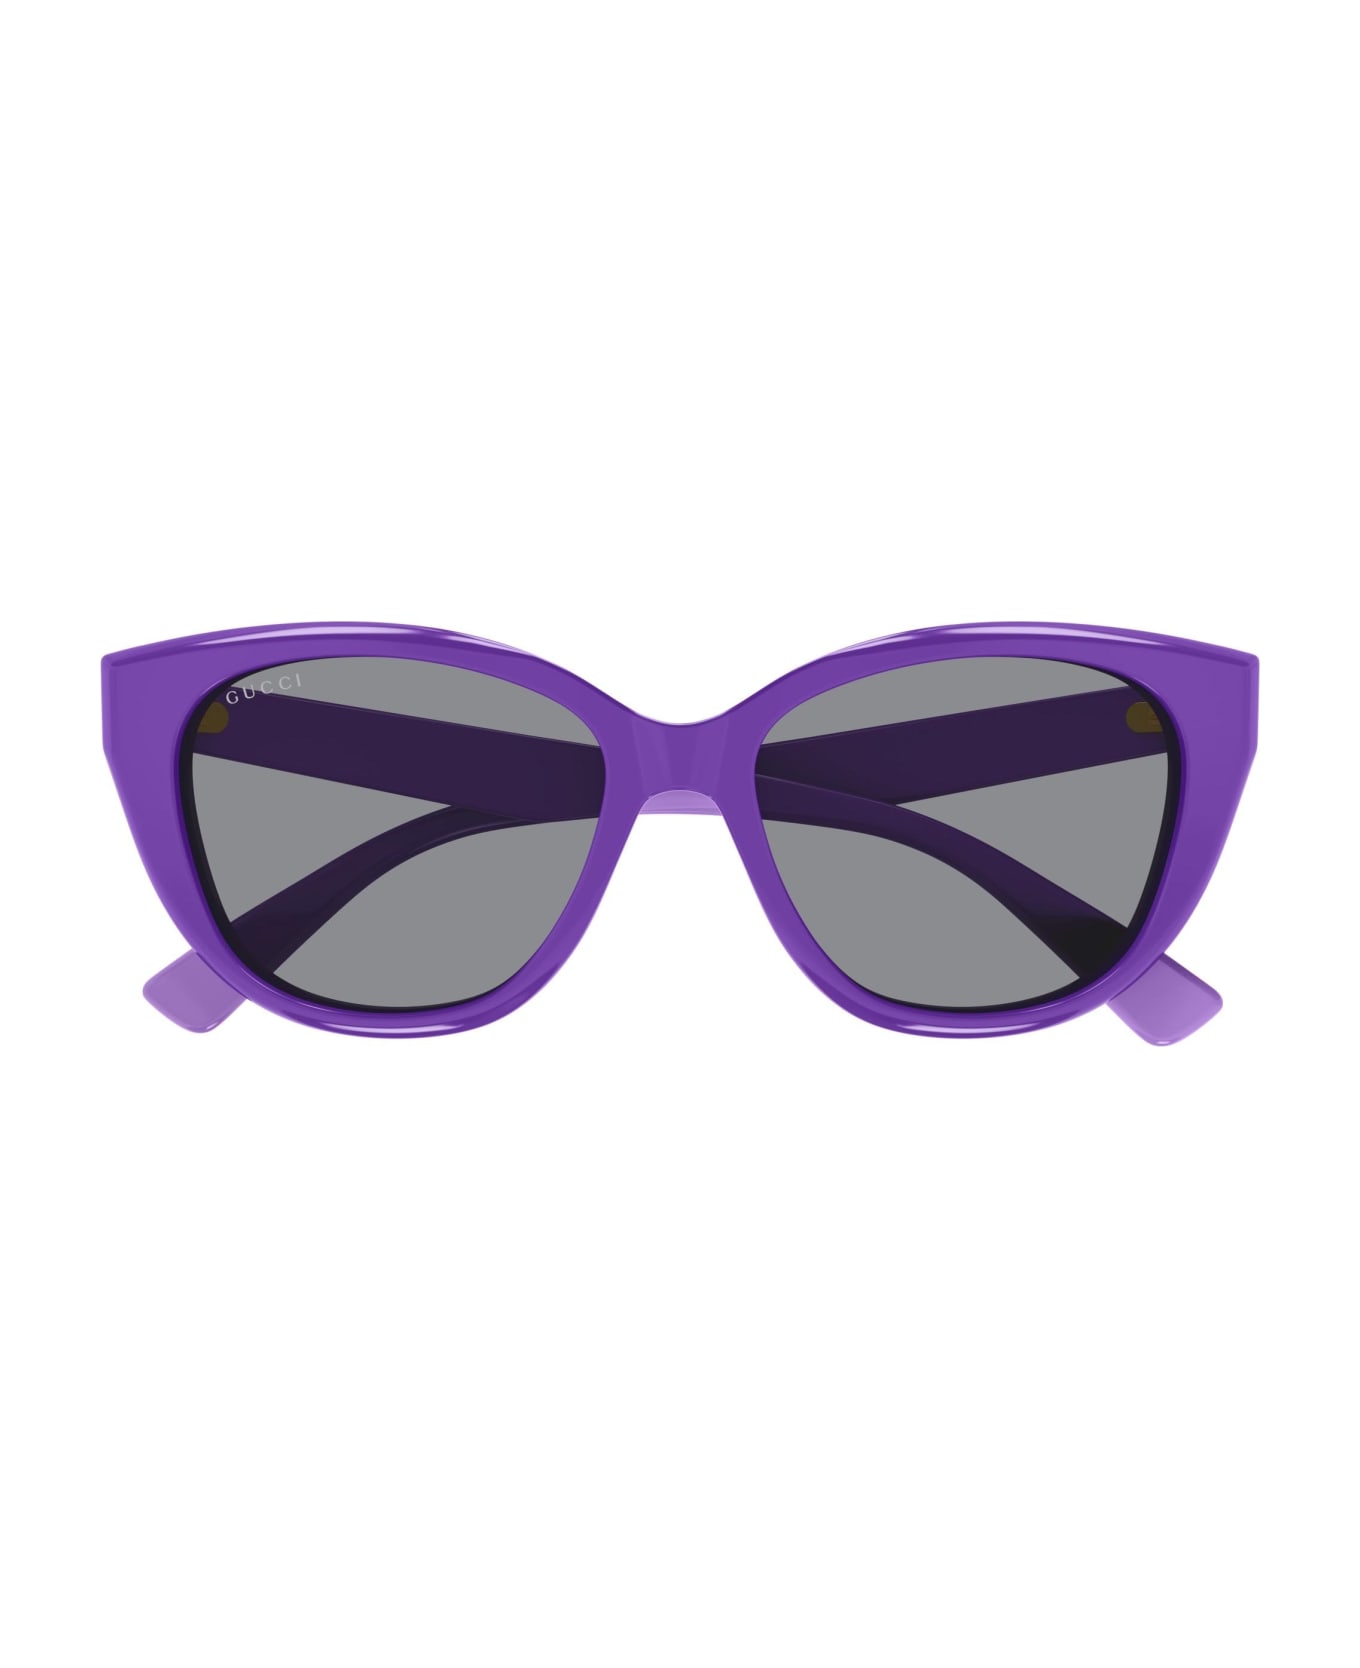 Gucci Eyewear Sunglasses - Viola/Grigio サングラス